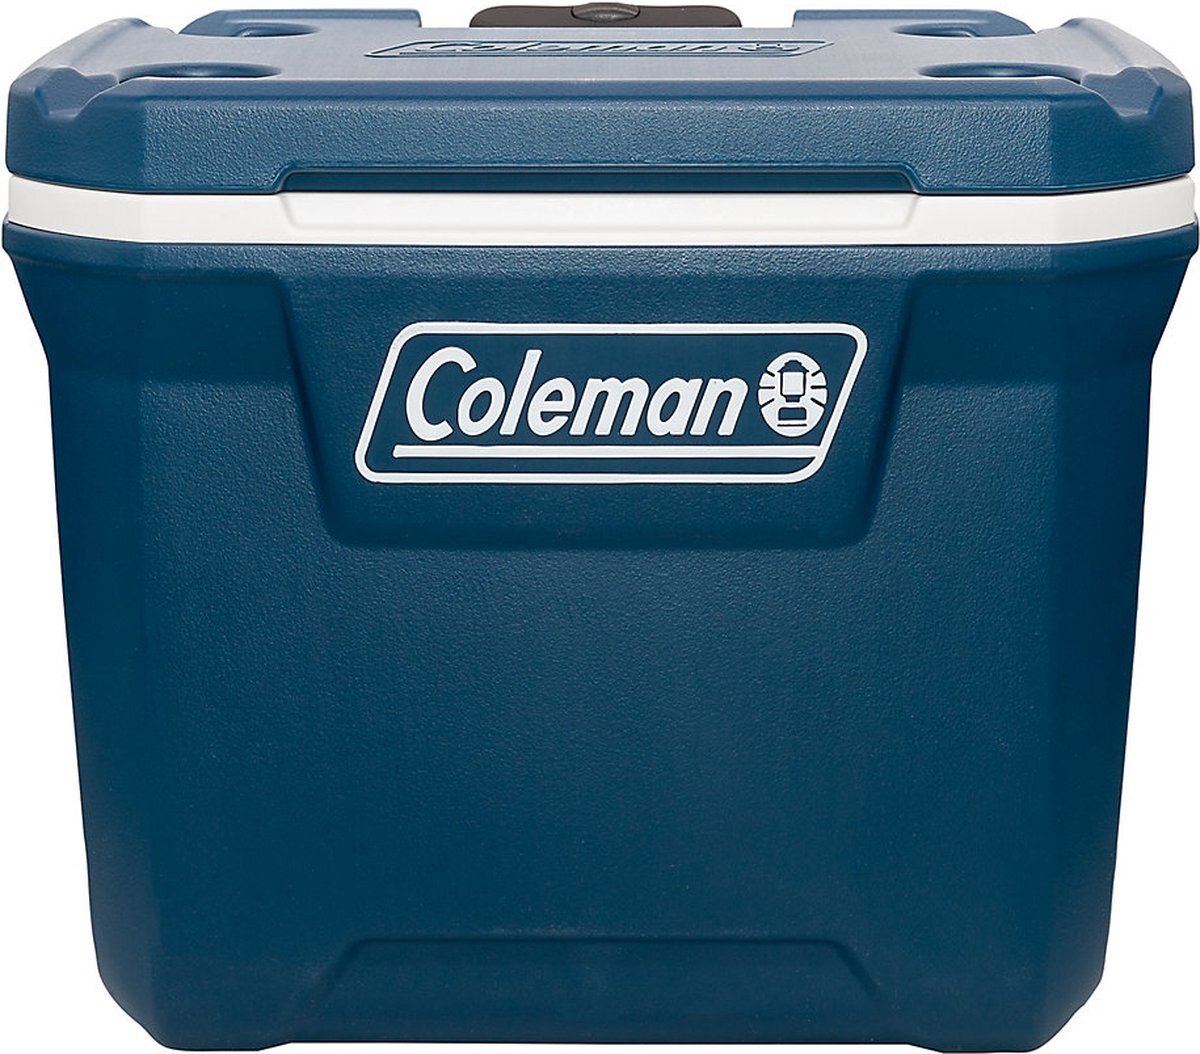 Coleman 50QT Xtreme Koelbox - 47 Liter - Wielen - Blauw